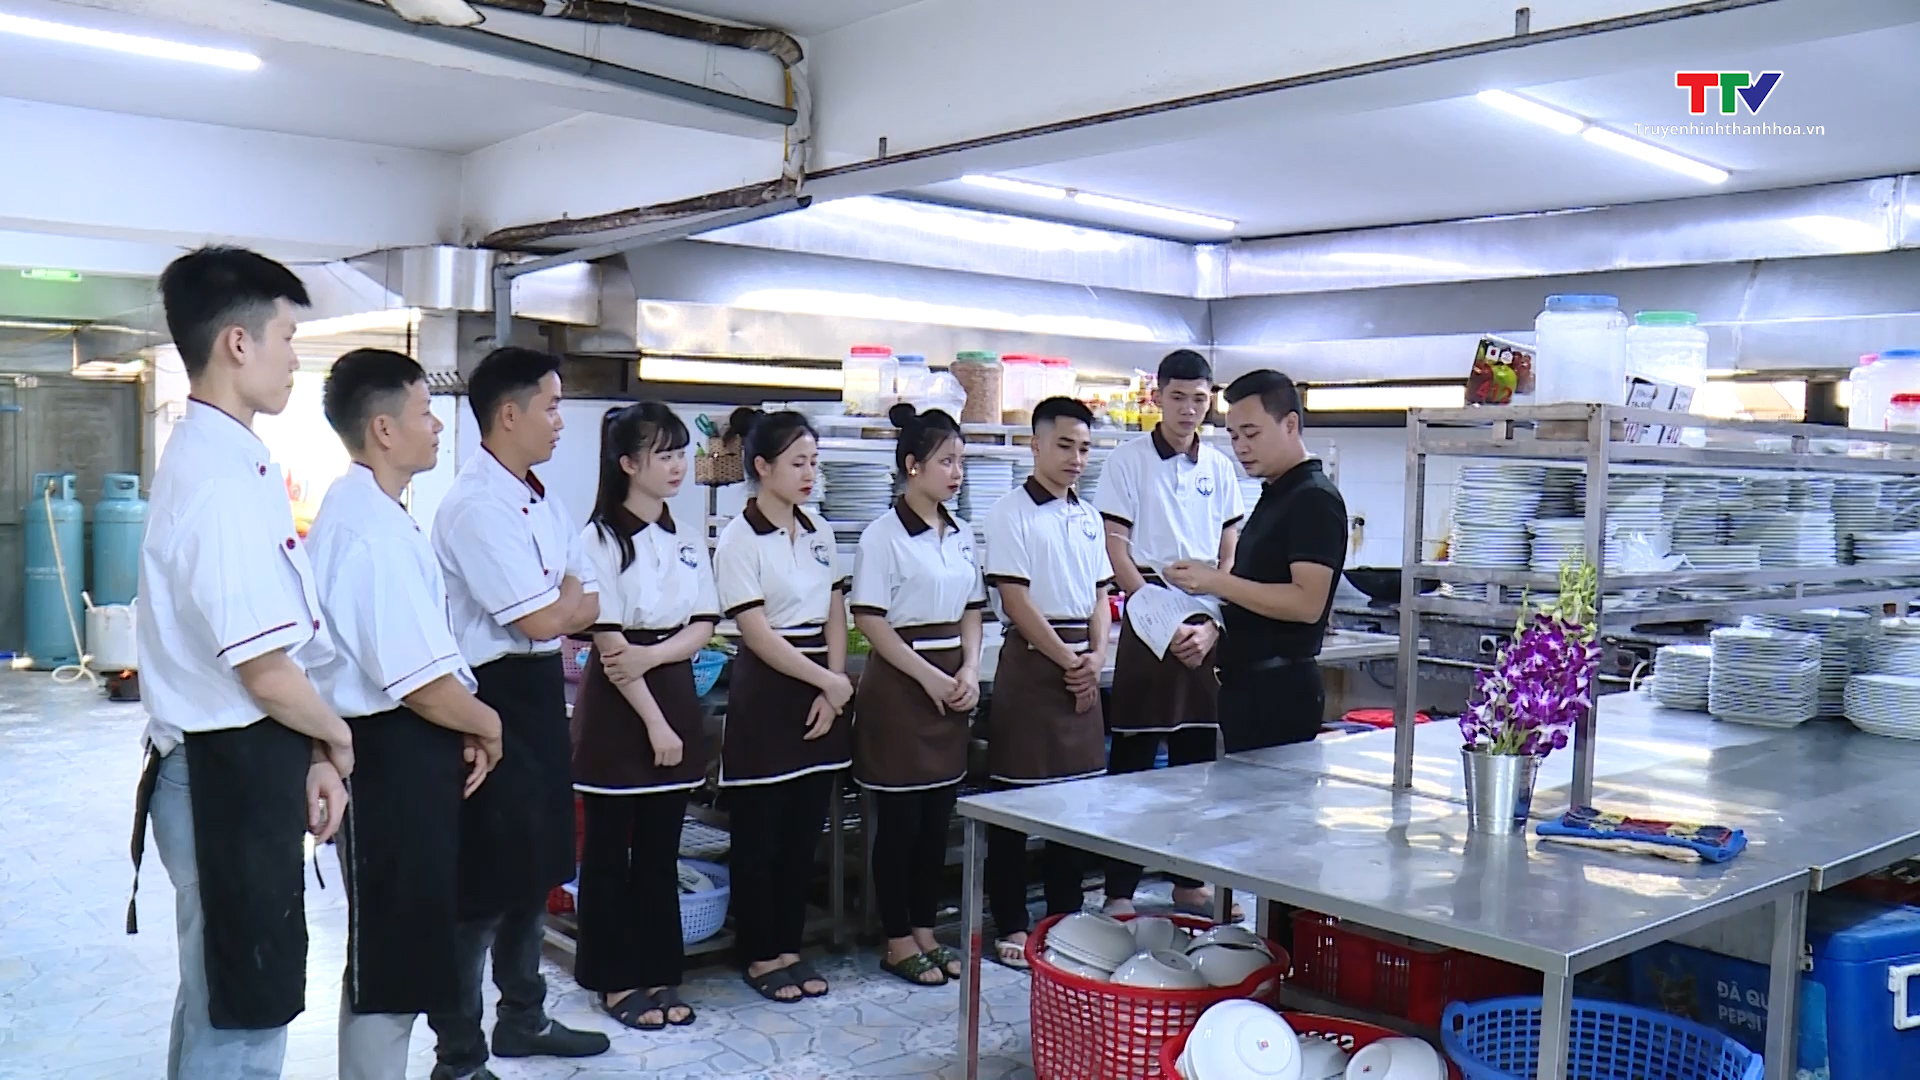 Sầm Sơn đảm bảo an toàn thực phẩm tại các cơ sở kinh doanh dịch vụ ăn uống - Ảnh 2.